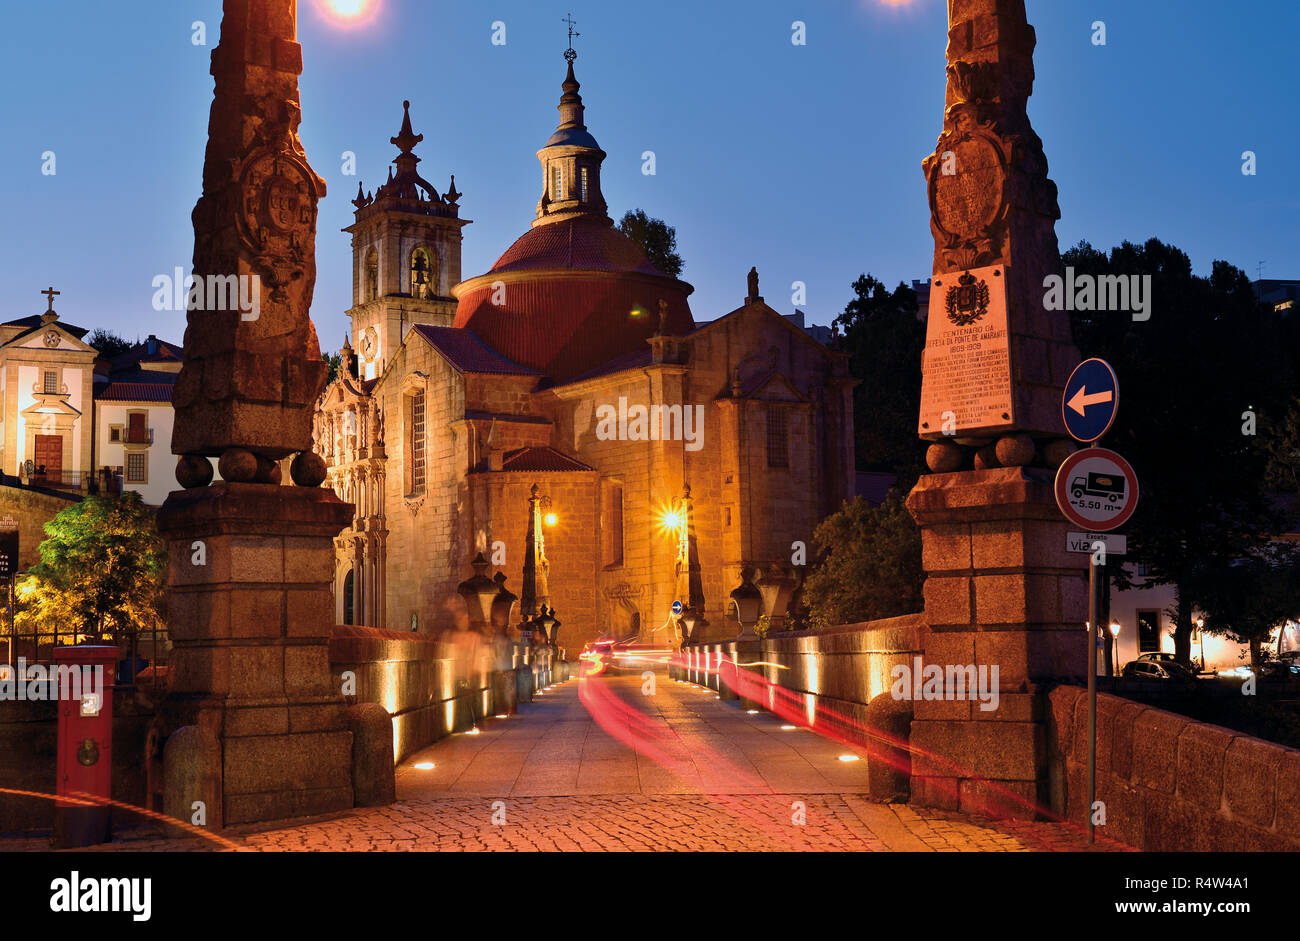 Orologio notturno illuminato il ponte medievale e convento di Amarante Foto Stock